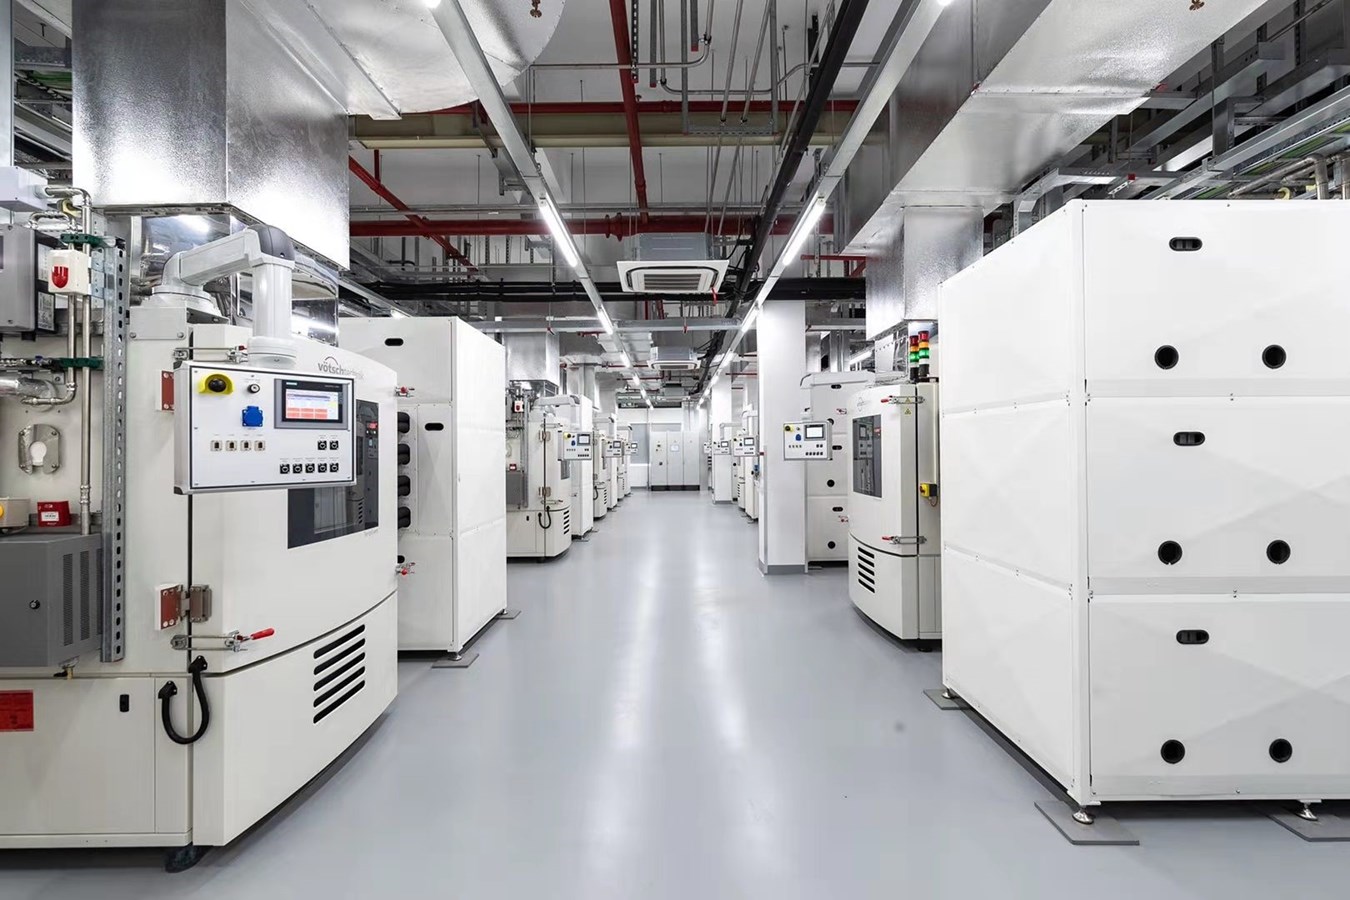 沃尔沃汽车亚太区研发中心电池实验室正式揭幕